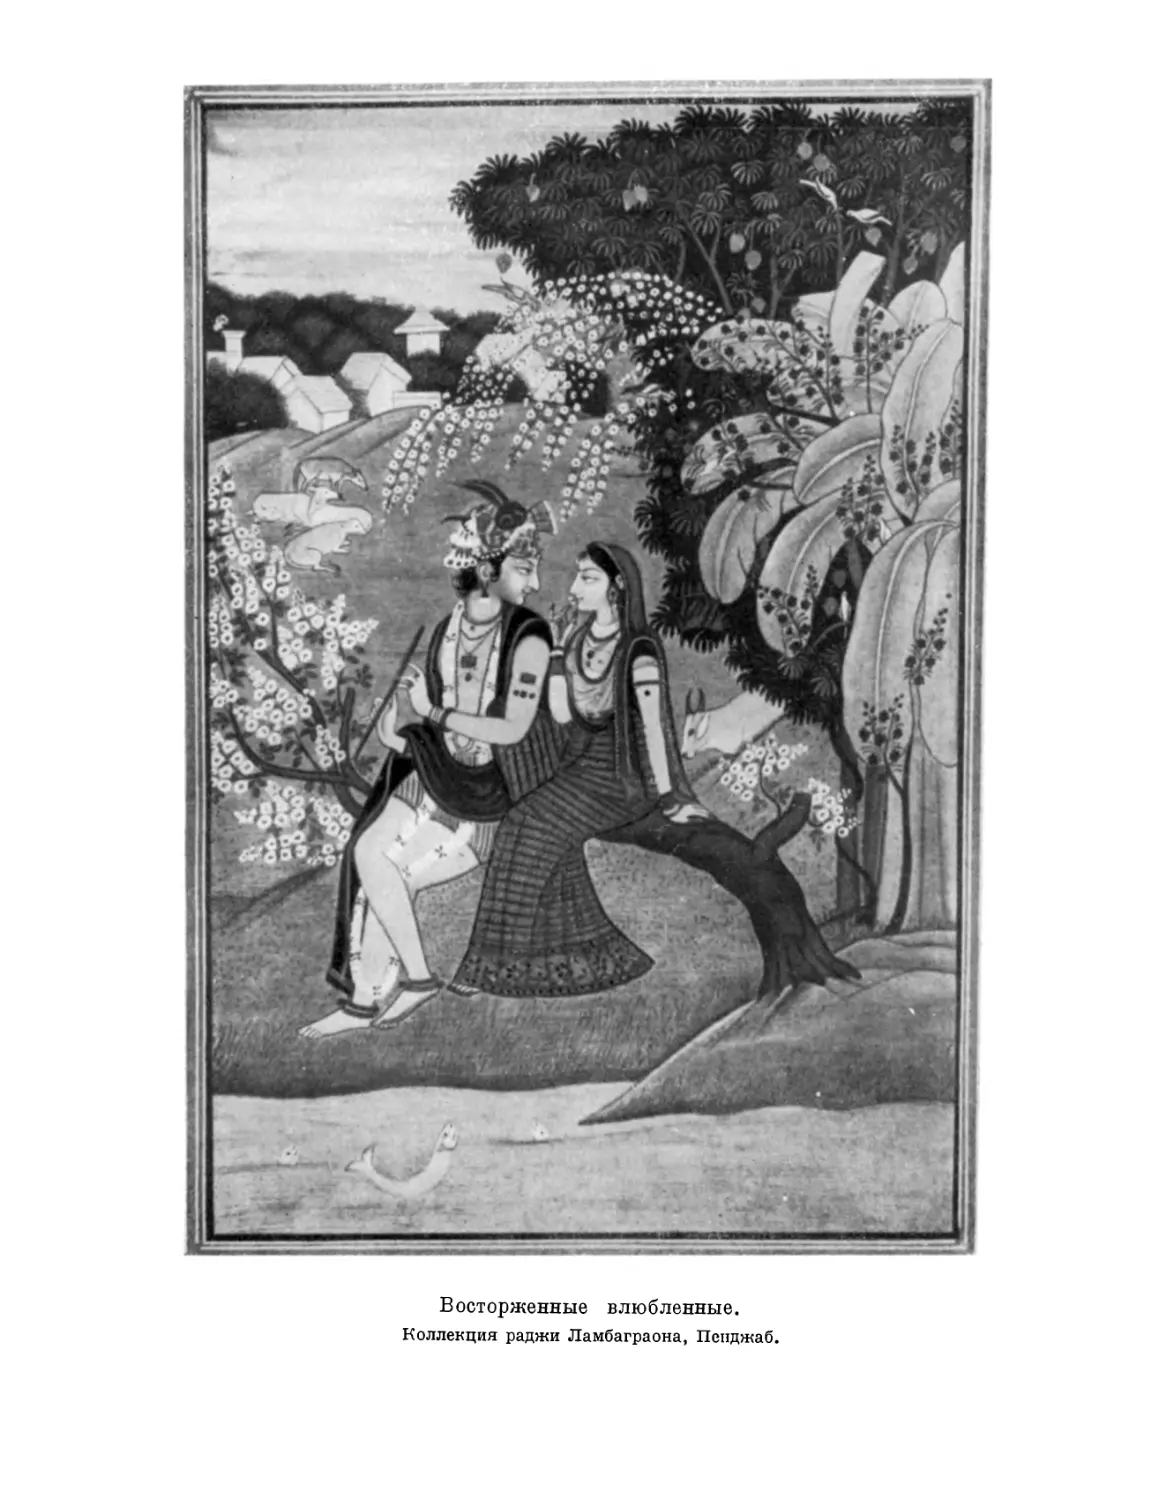 Вклейка. Кришна, заплетающий косы своей возлюбленной Радхи